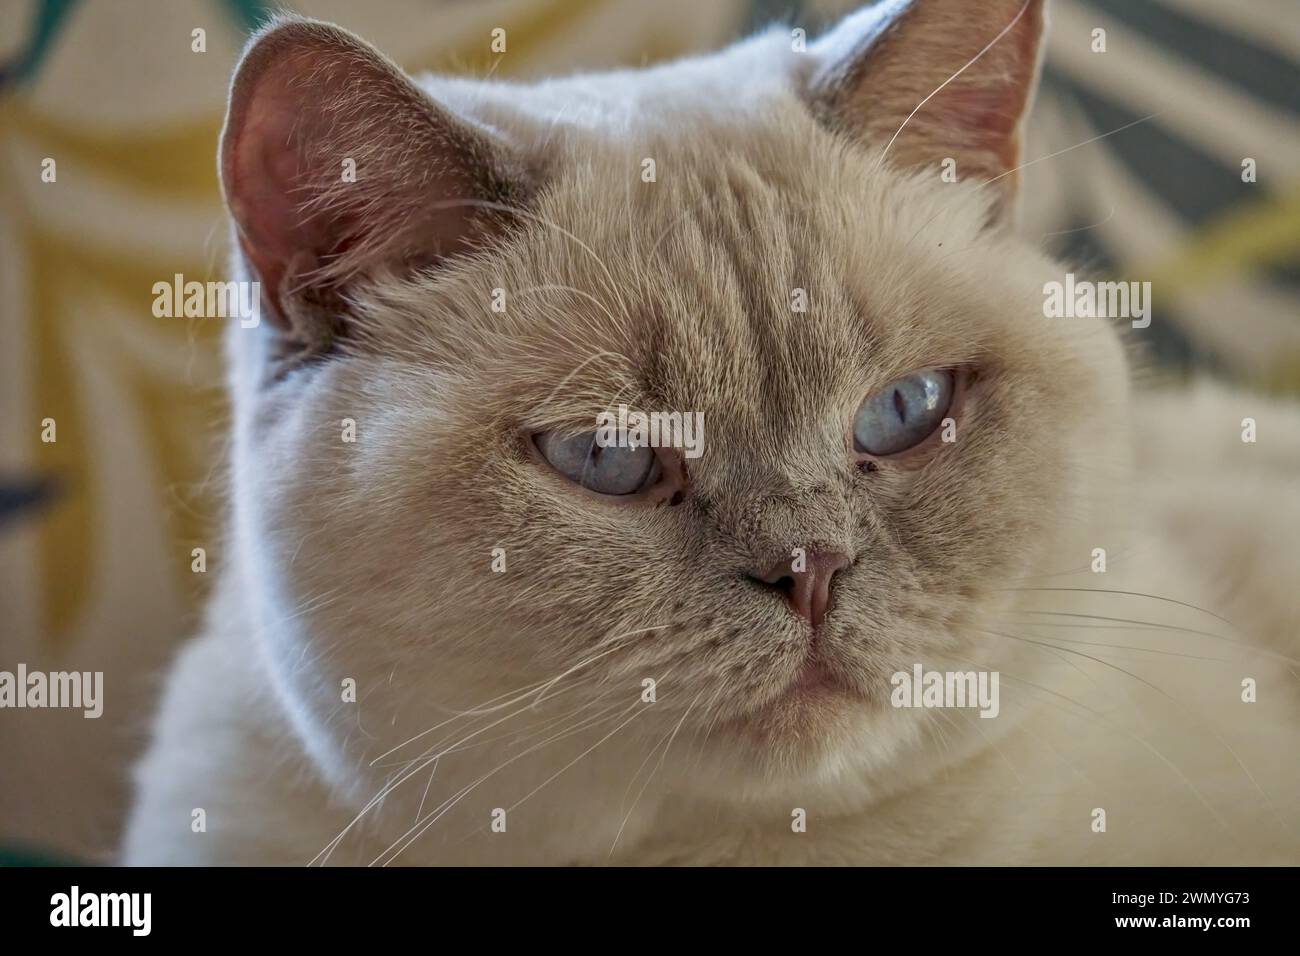 Yeux bleus British shorthair kitten crème catkin colorpoint avec des bouts gris Banque D'Images